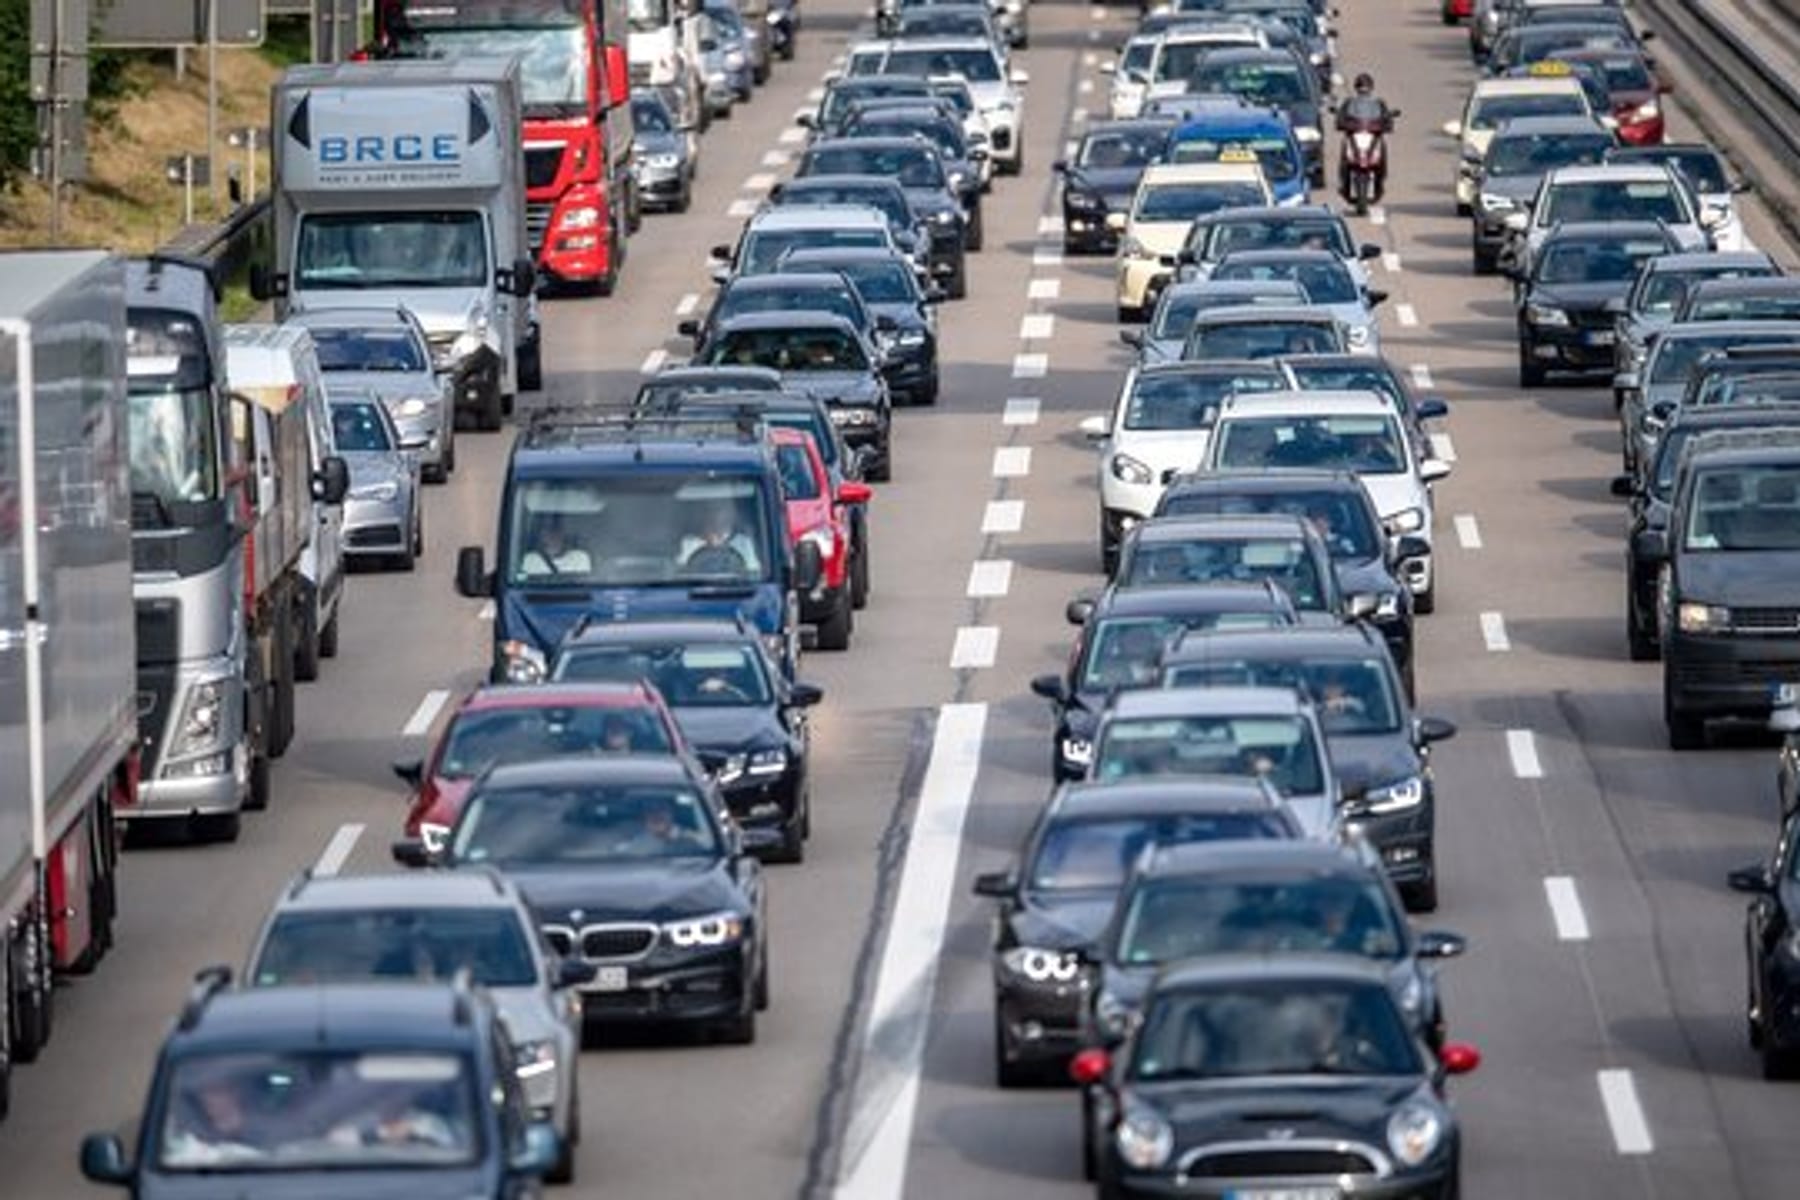 Warnblinker: Ist das Einschalten am Autobahn-Stauende Pflicht?